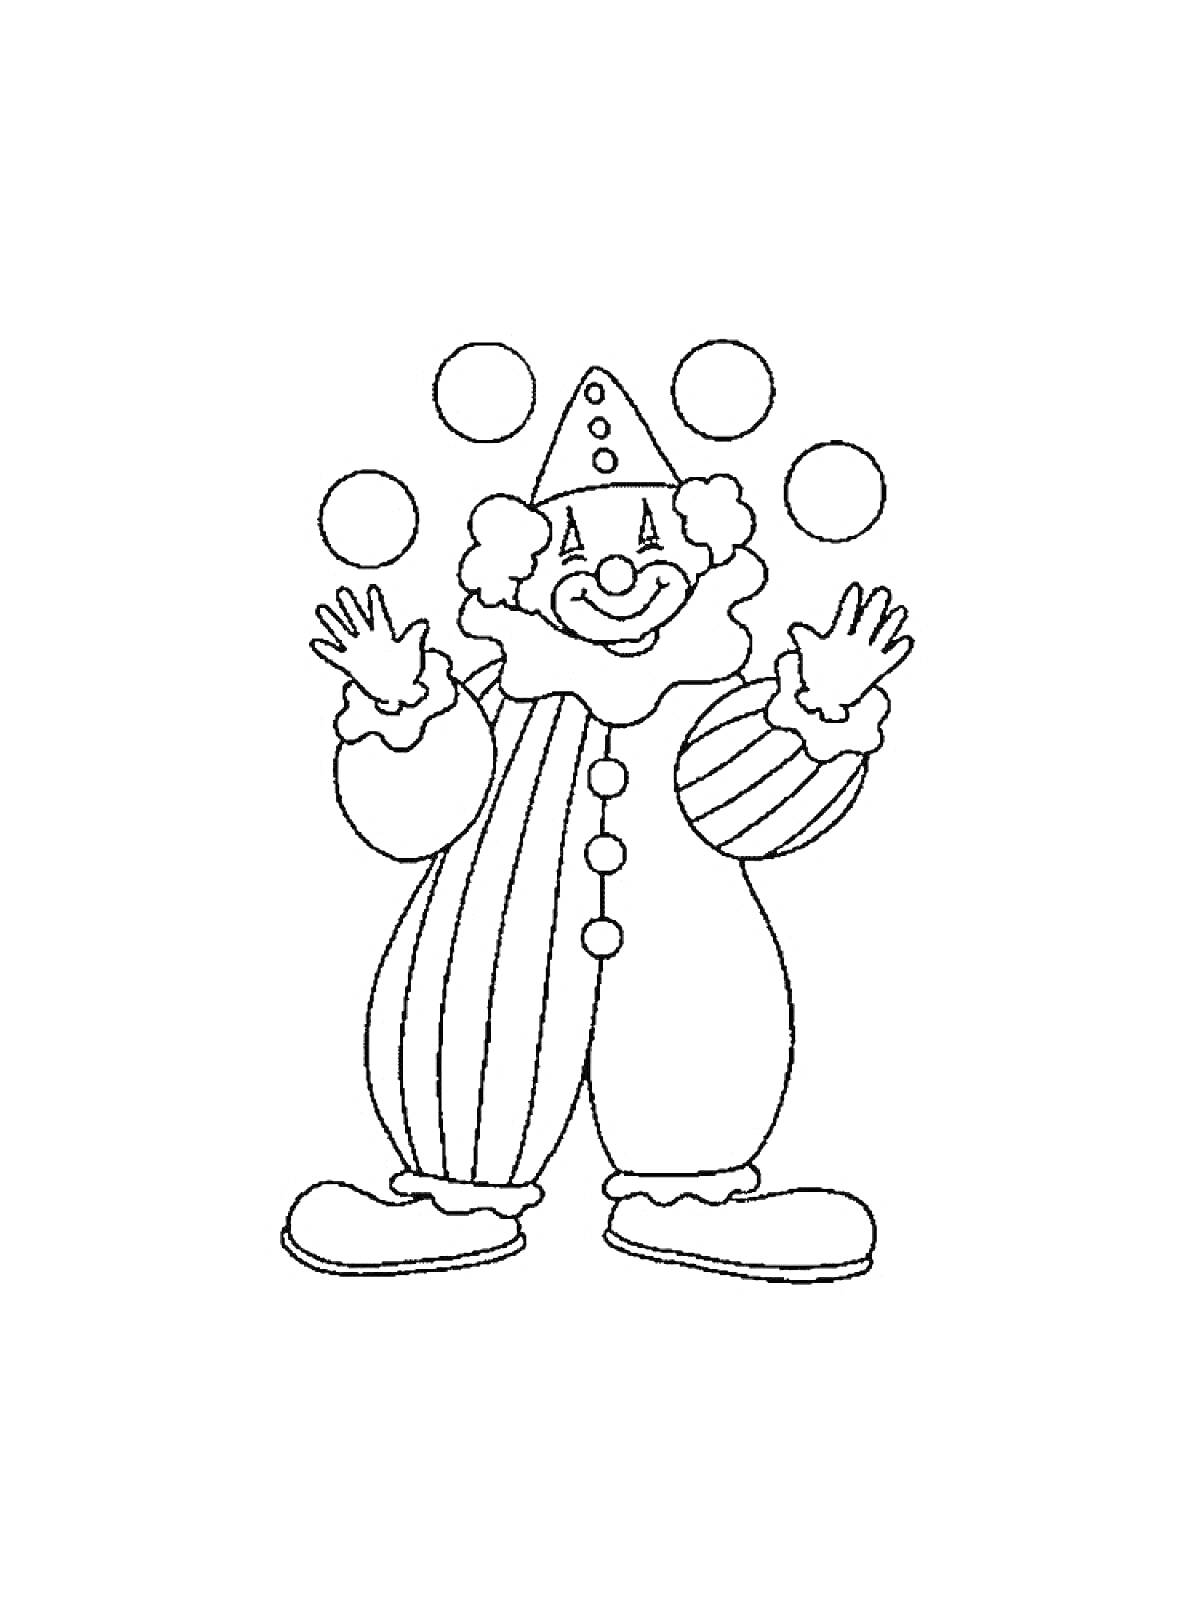 Раскраска Клоун жонглирует мячами в полосатом костюме и шапочке с помпонами